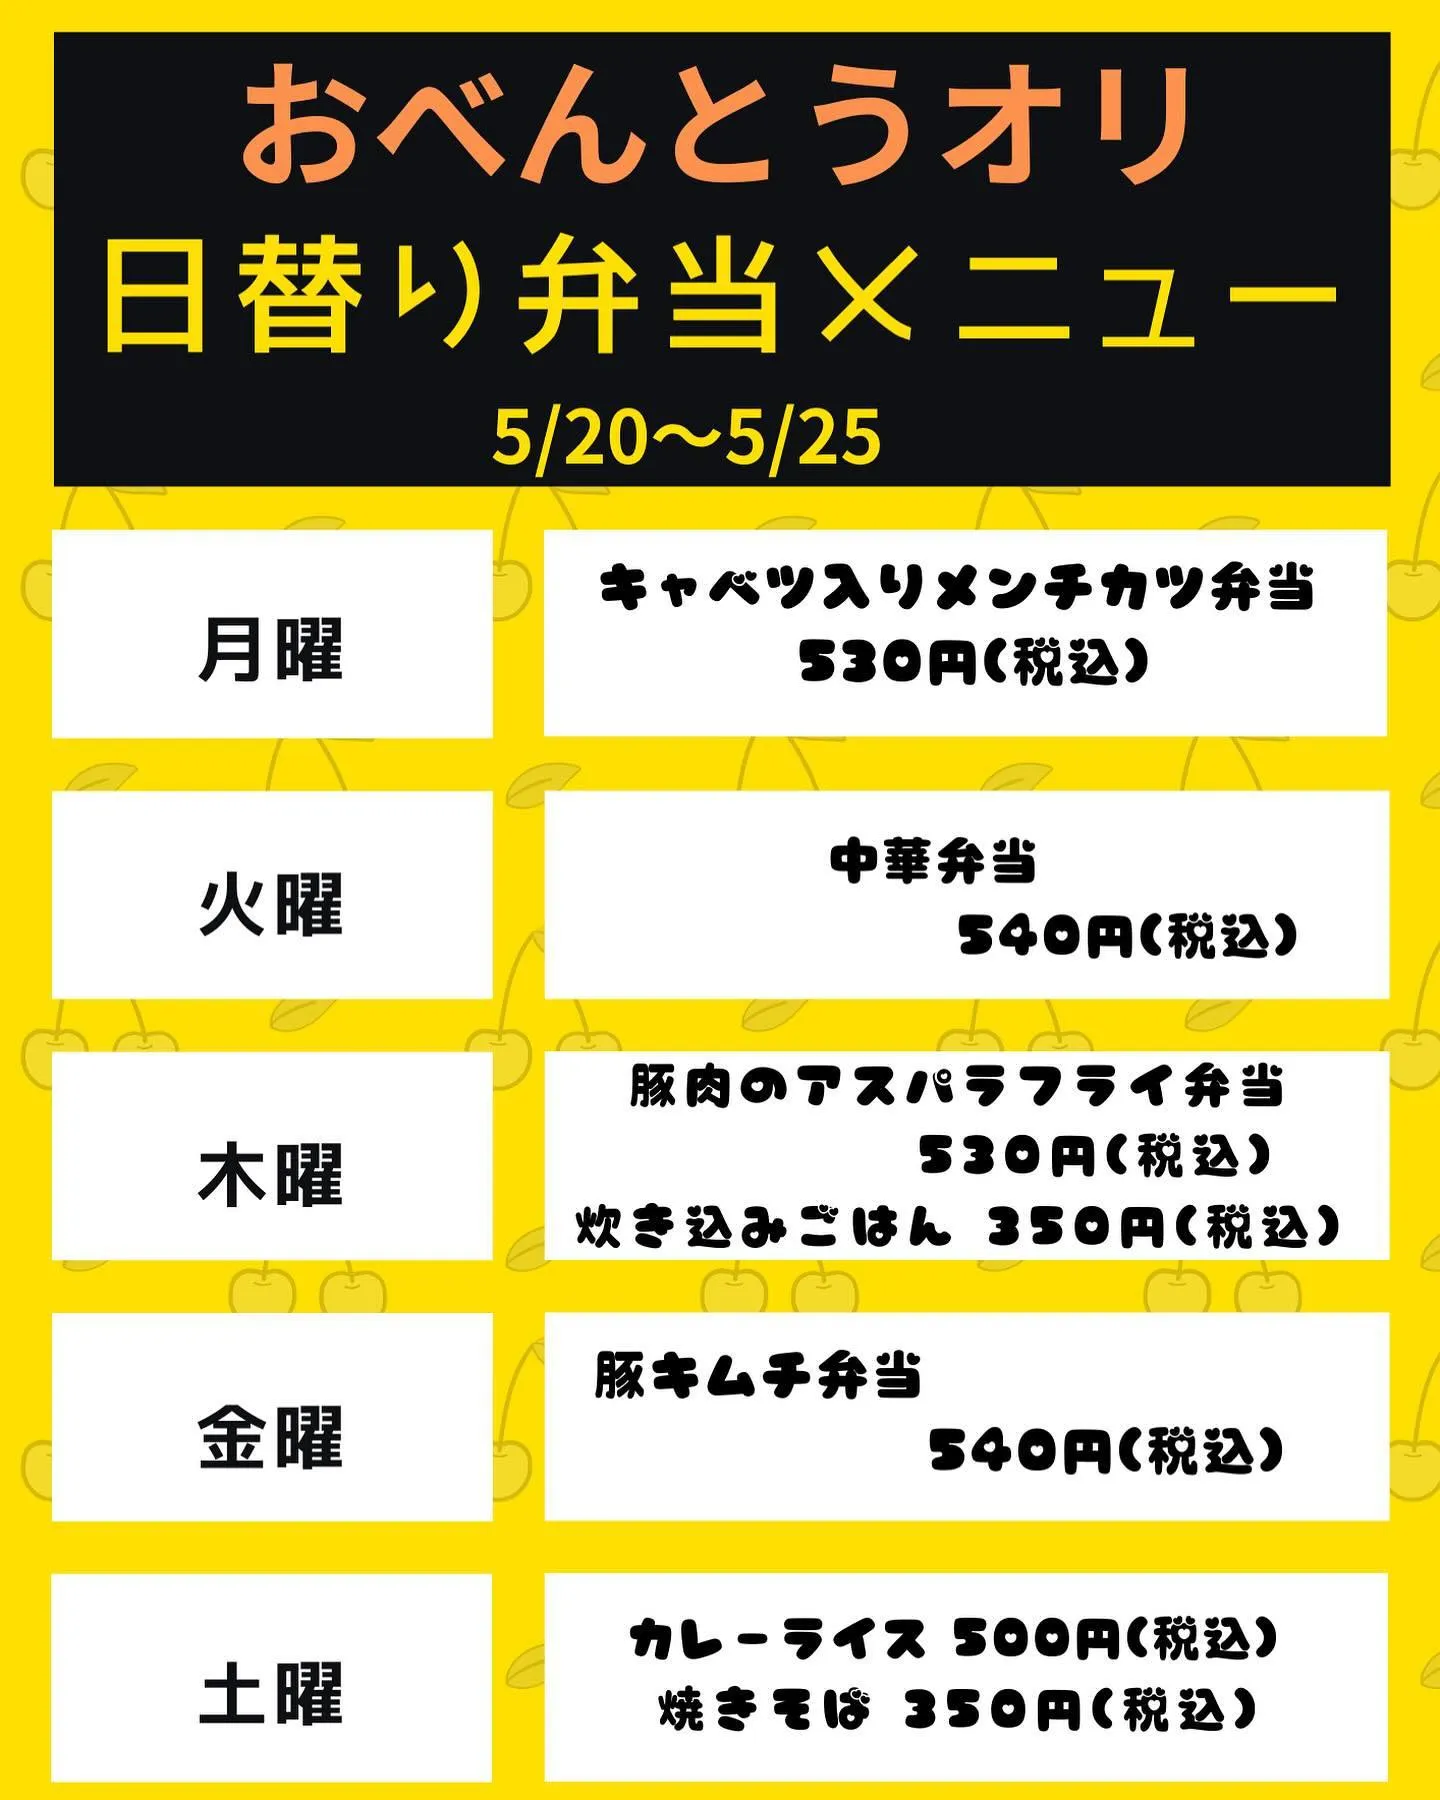 5/20〜5/26 日替り弁当メニュー